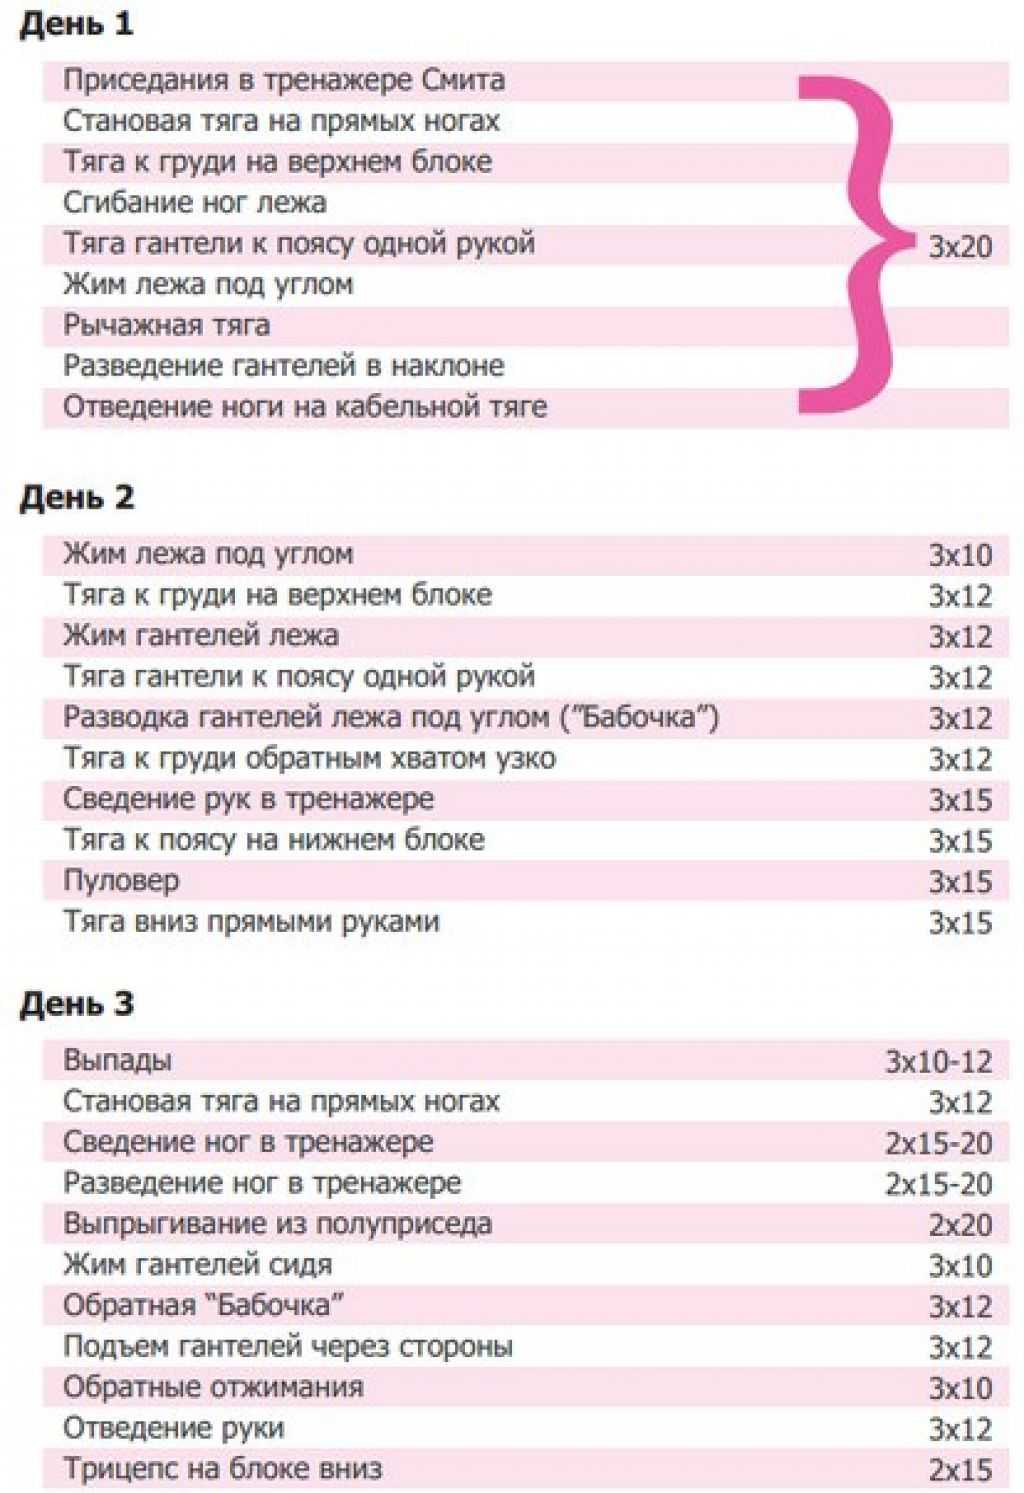 Тренировка на рельеф для девушек: виды упражнений, пошаговая инструкция их выполнения, расписание программы тренировок, расчет нагрузок и необходимое спортивное оборудование - tony.ru